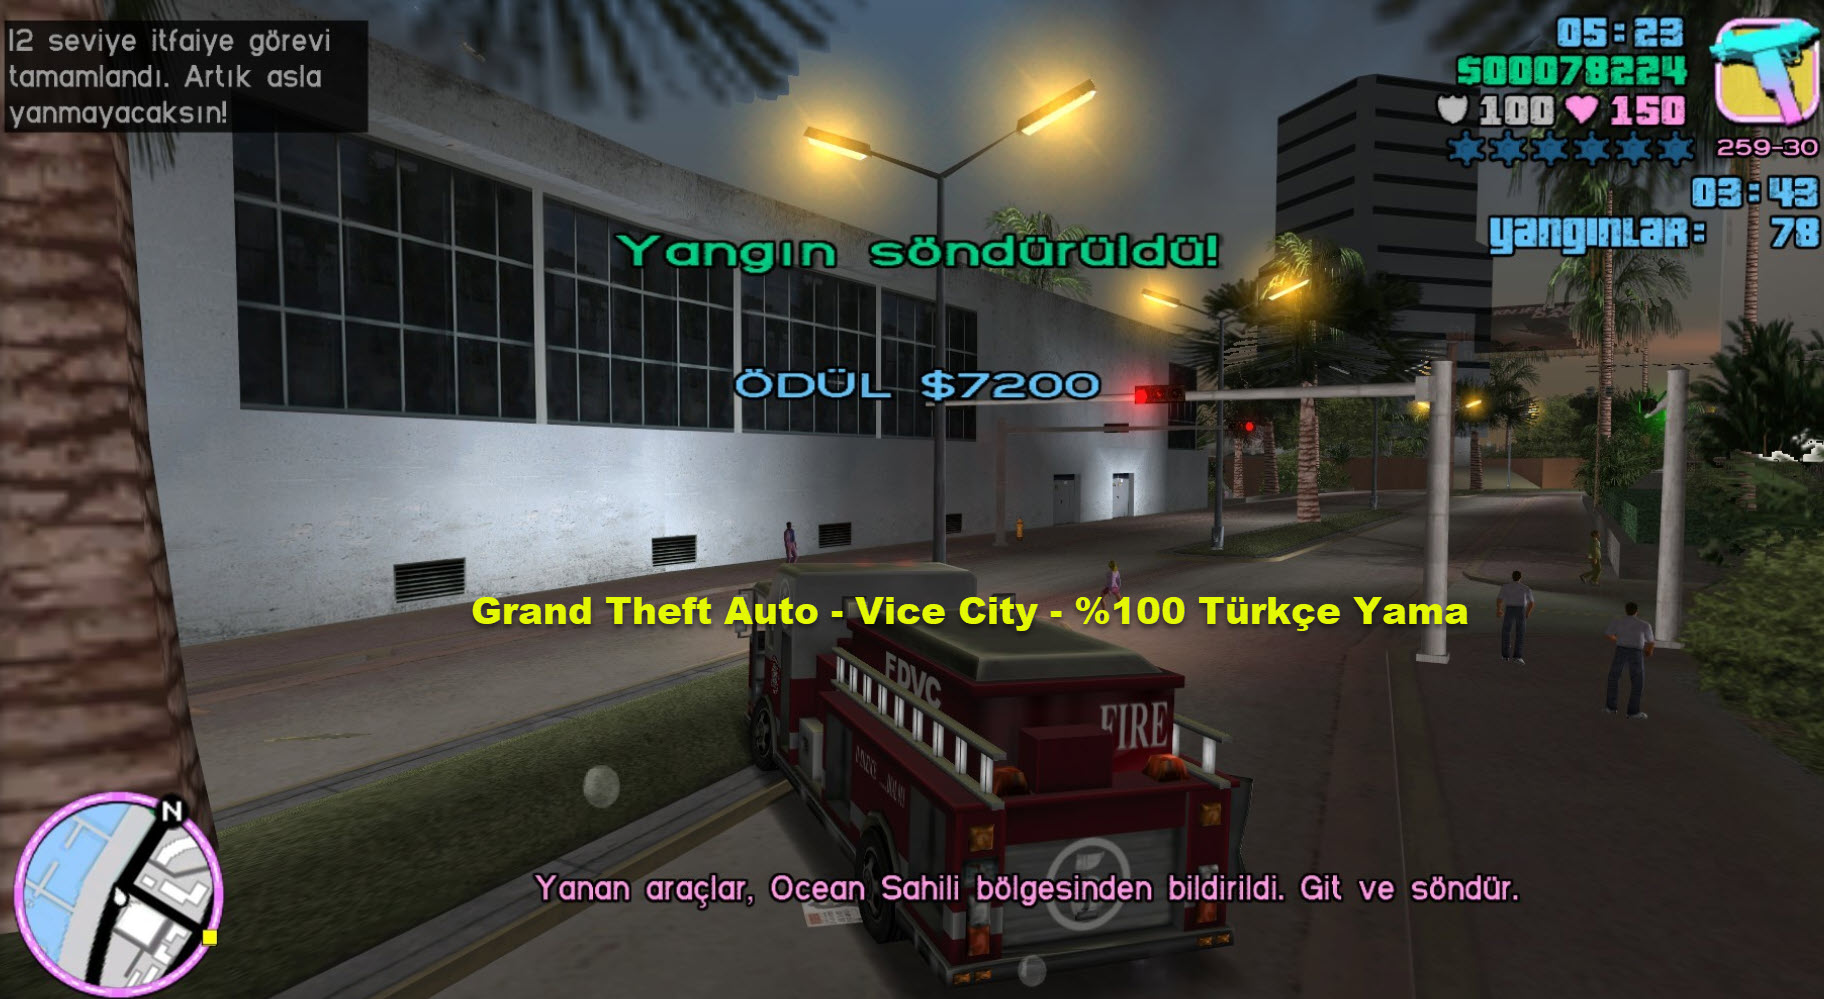 Grand Theft Auto – Vice City – 100 Turkce Yama 4